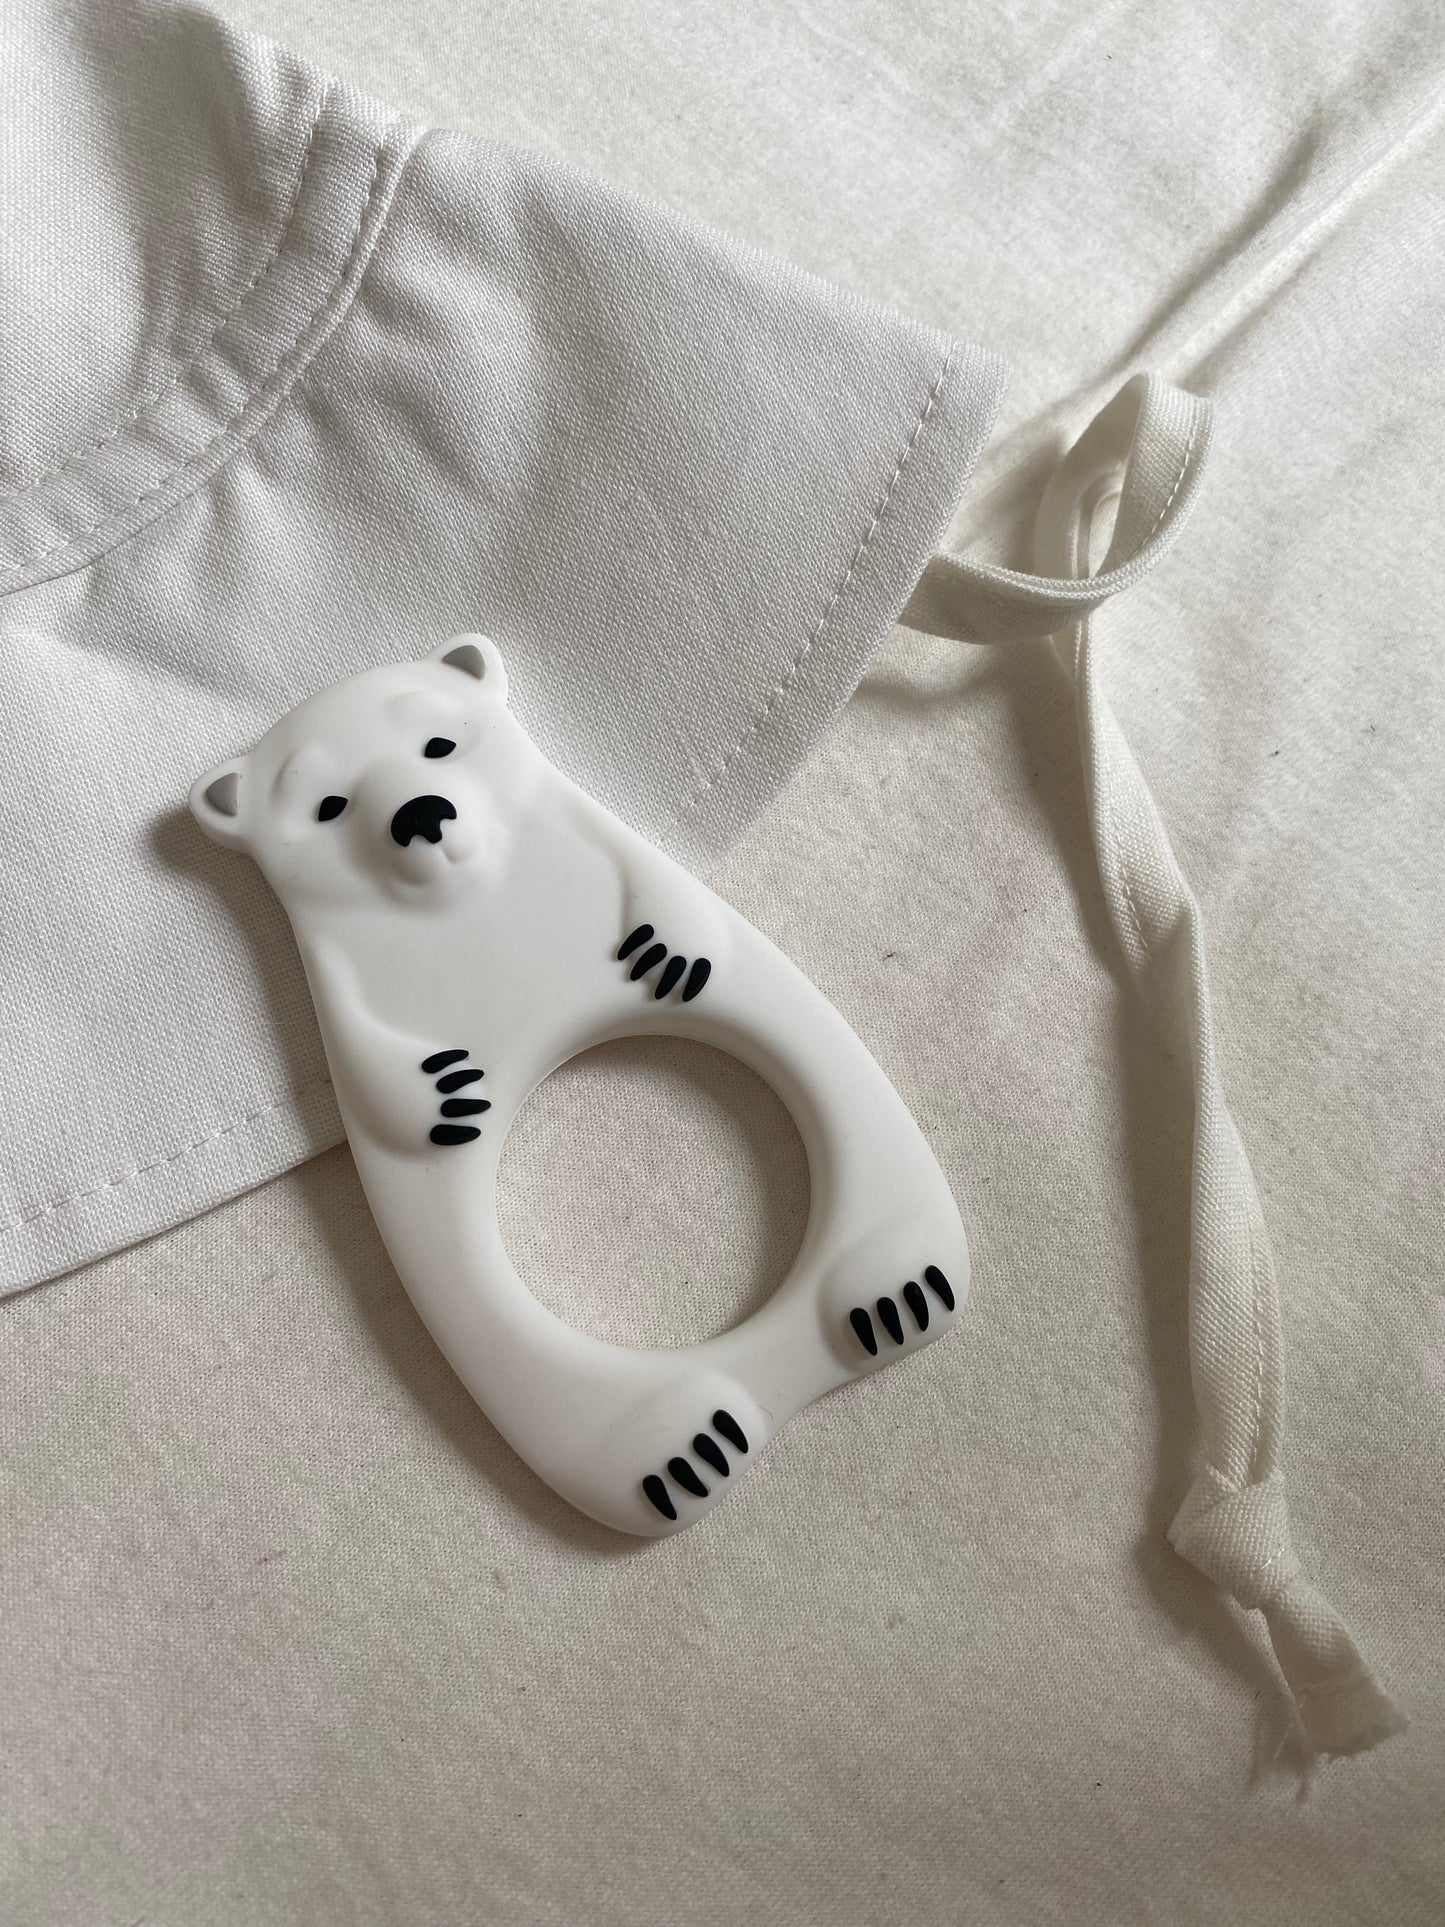 Bara Baby Silikonisbjörn Baby Teether - Nordisk stil, perfekt för nyfödda, lindrande vid tandning, ekologiskt och säkert, BPA-fri